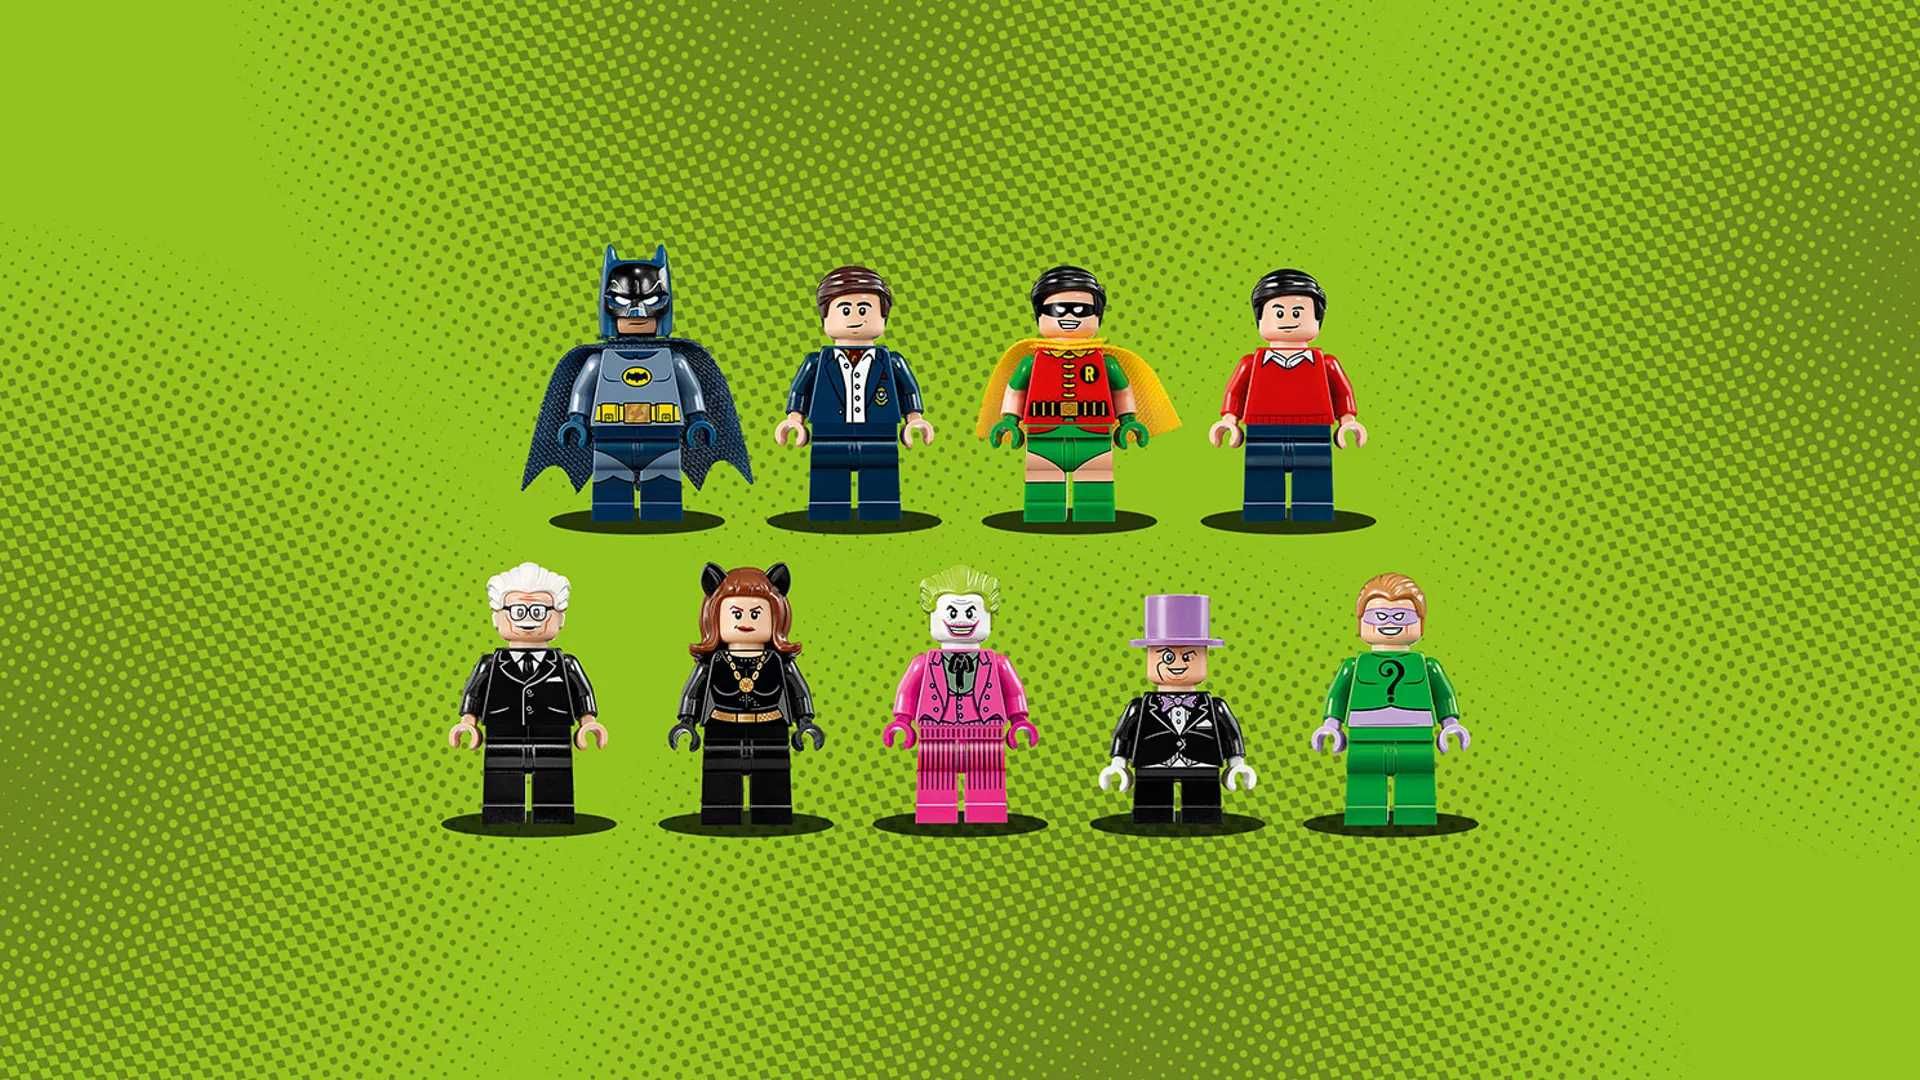 LEGO DC Super Heroes: Классическая Бэтпещера (76052 LEGO Batman)